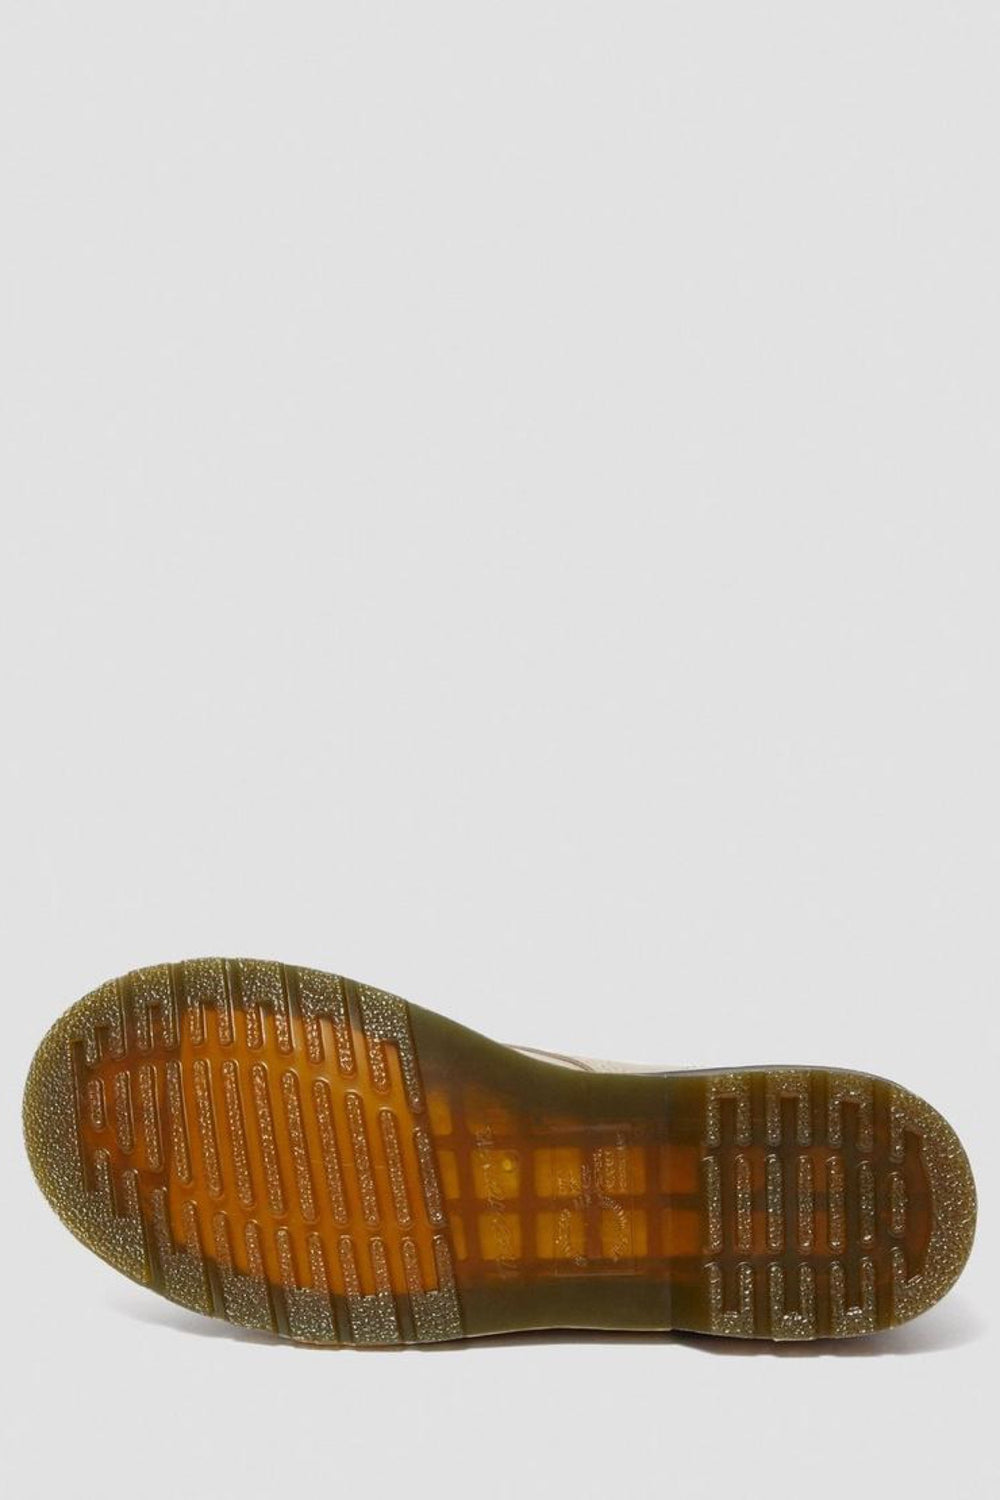 Natural Wanama Pascal 1460 Boot